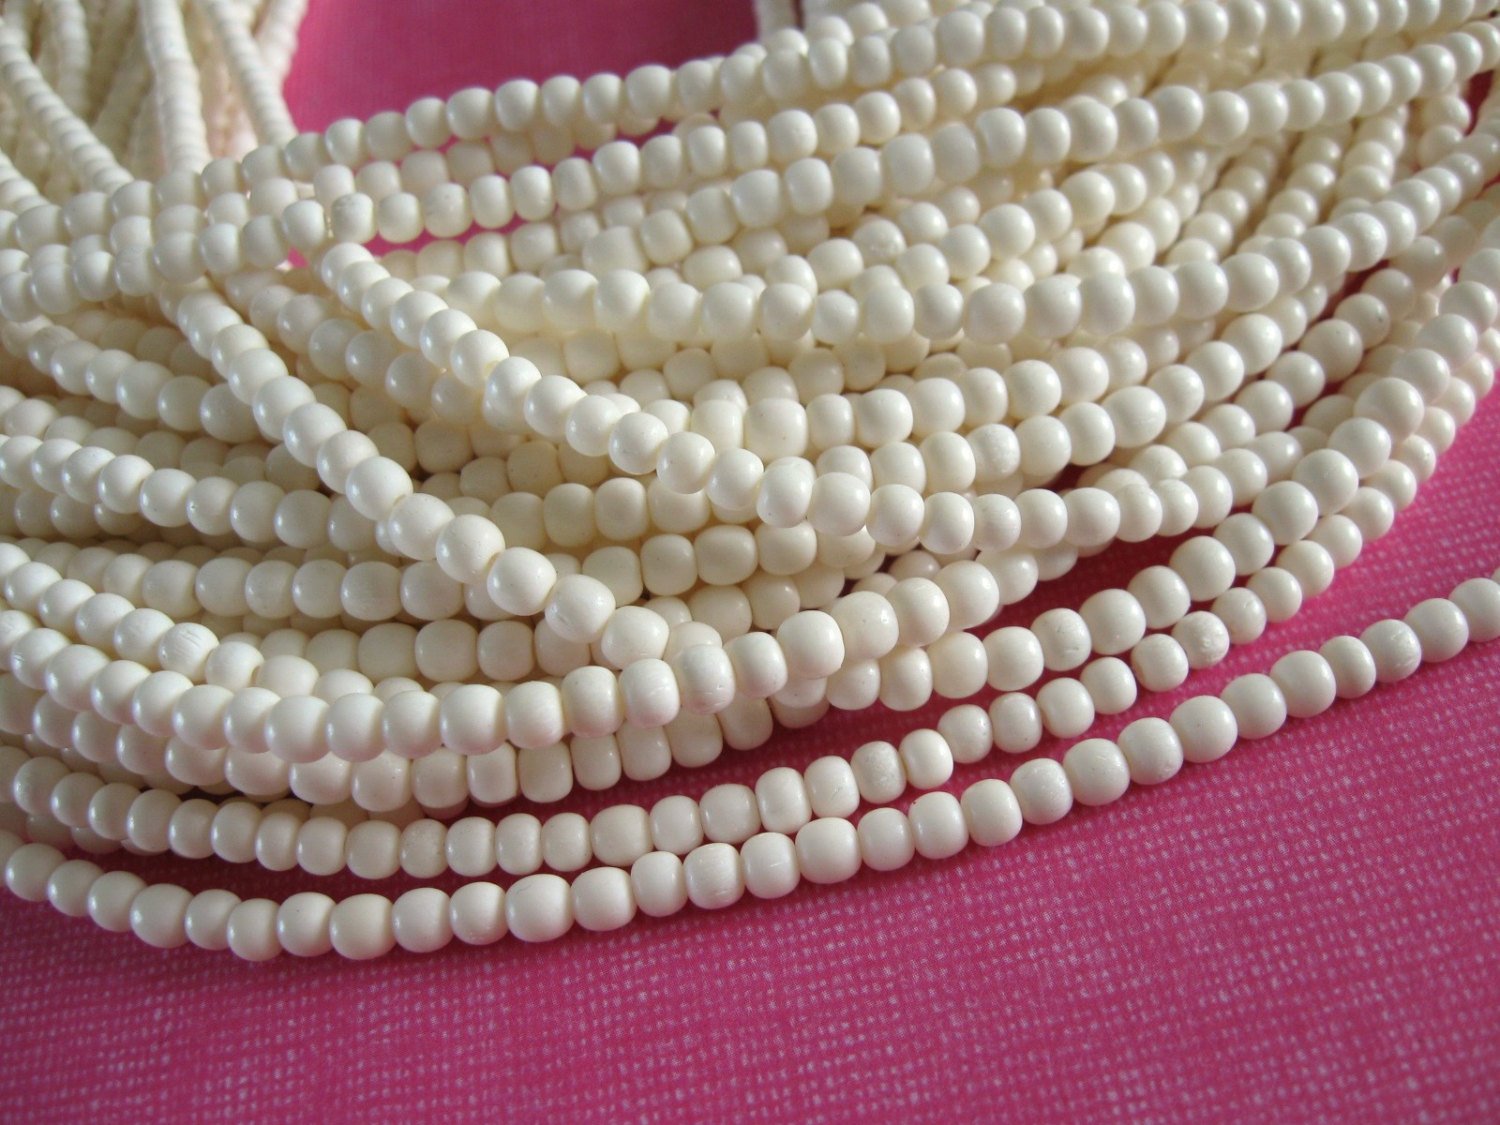 White bone beads, 100 bone round beads 3-4mm, eco friendly and natural bone beads